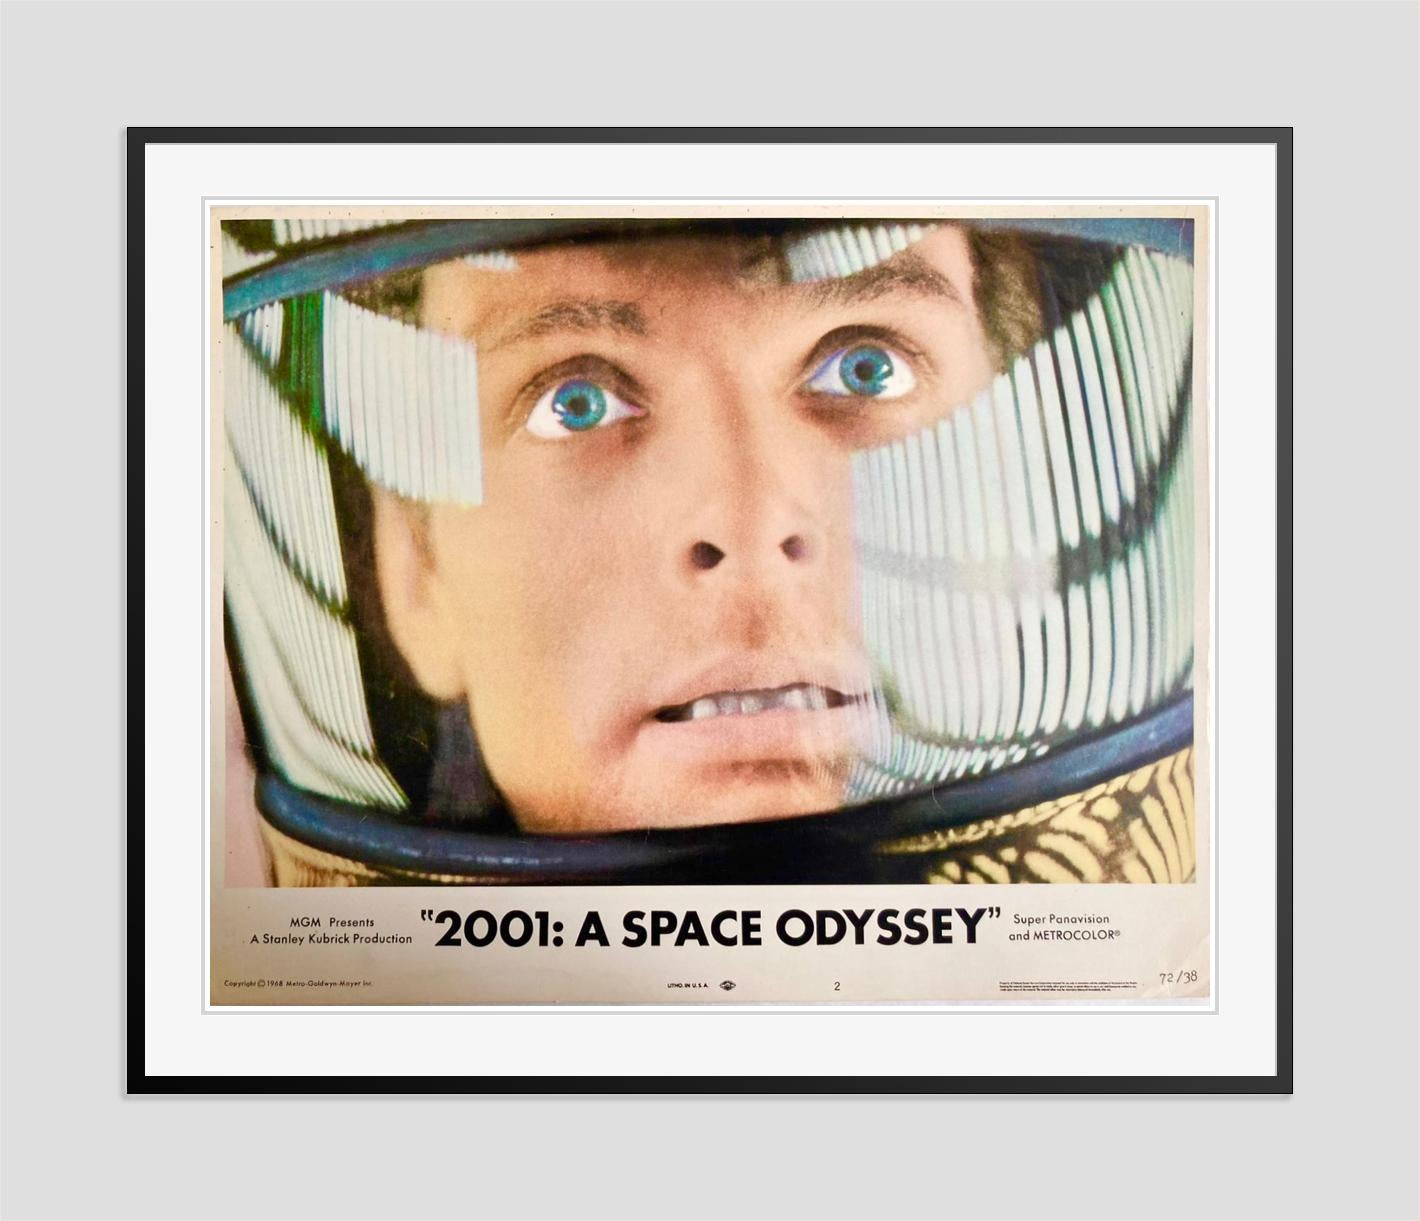 2001 A Space Odyssey - Original Vintage 1968 Movie Film Cinema Lobby Card  - Modern Print by Unknown